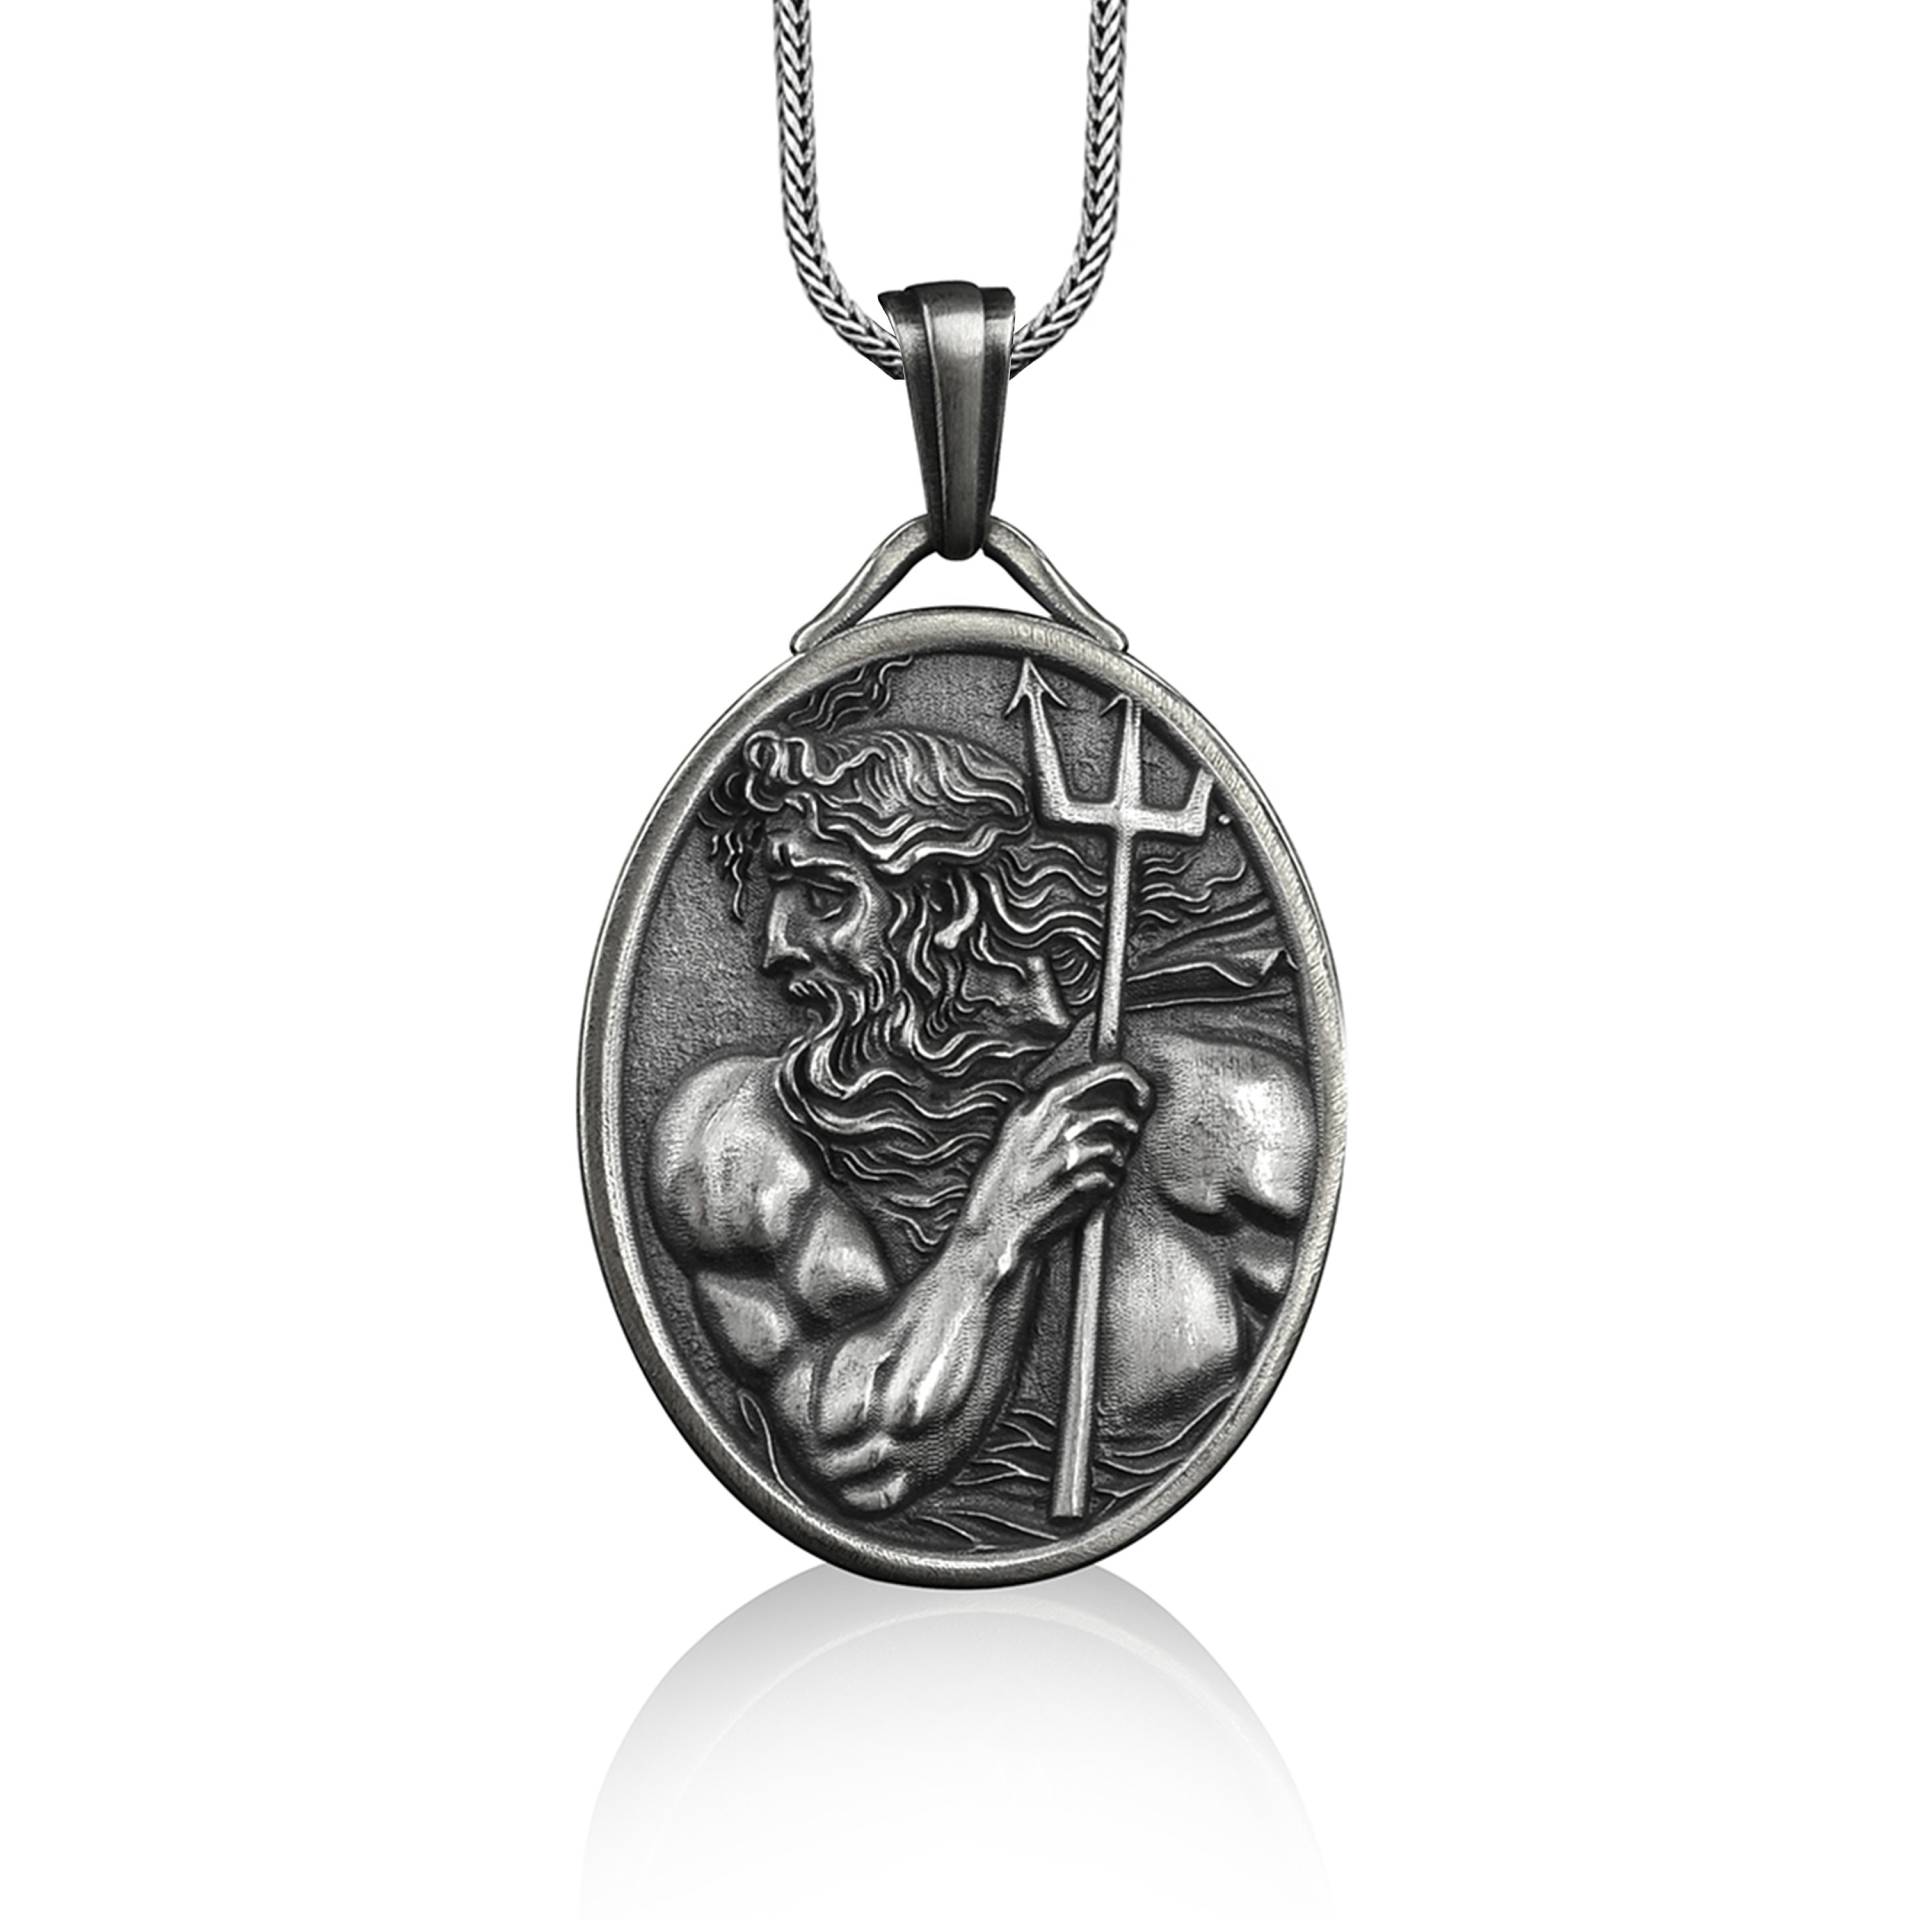 Poseidon Halskette Mit Dreizack Anhänger in Silber, Personalisierte Für Die Beste Freundin, Geschenk Ihn von BySilverStone